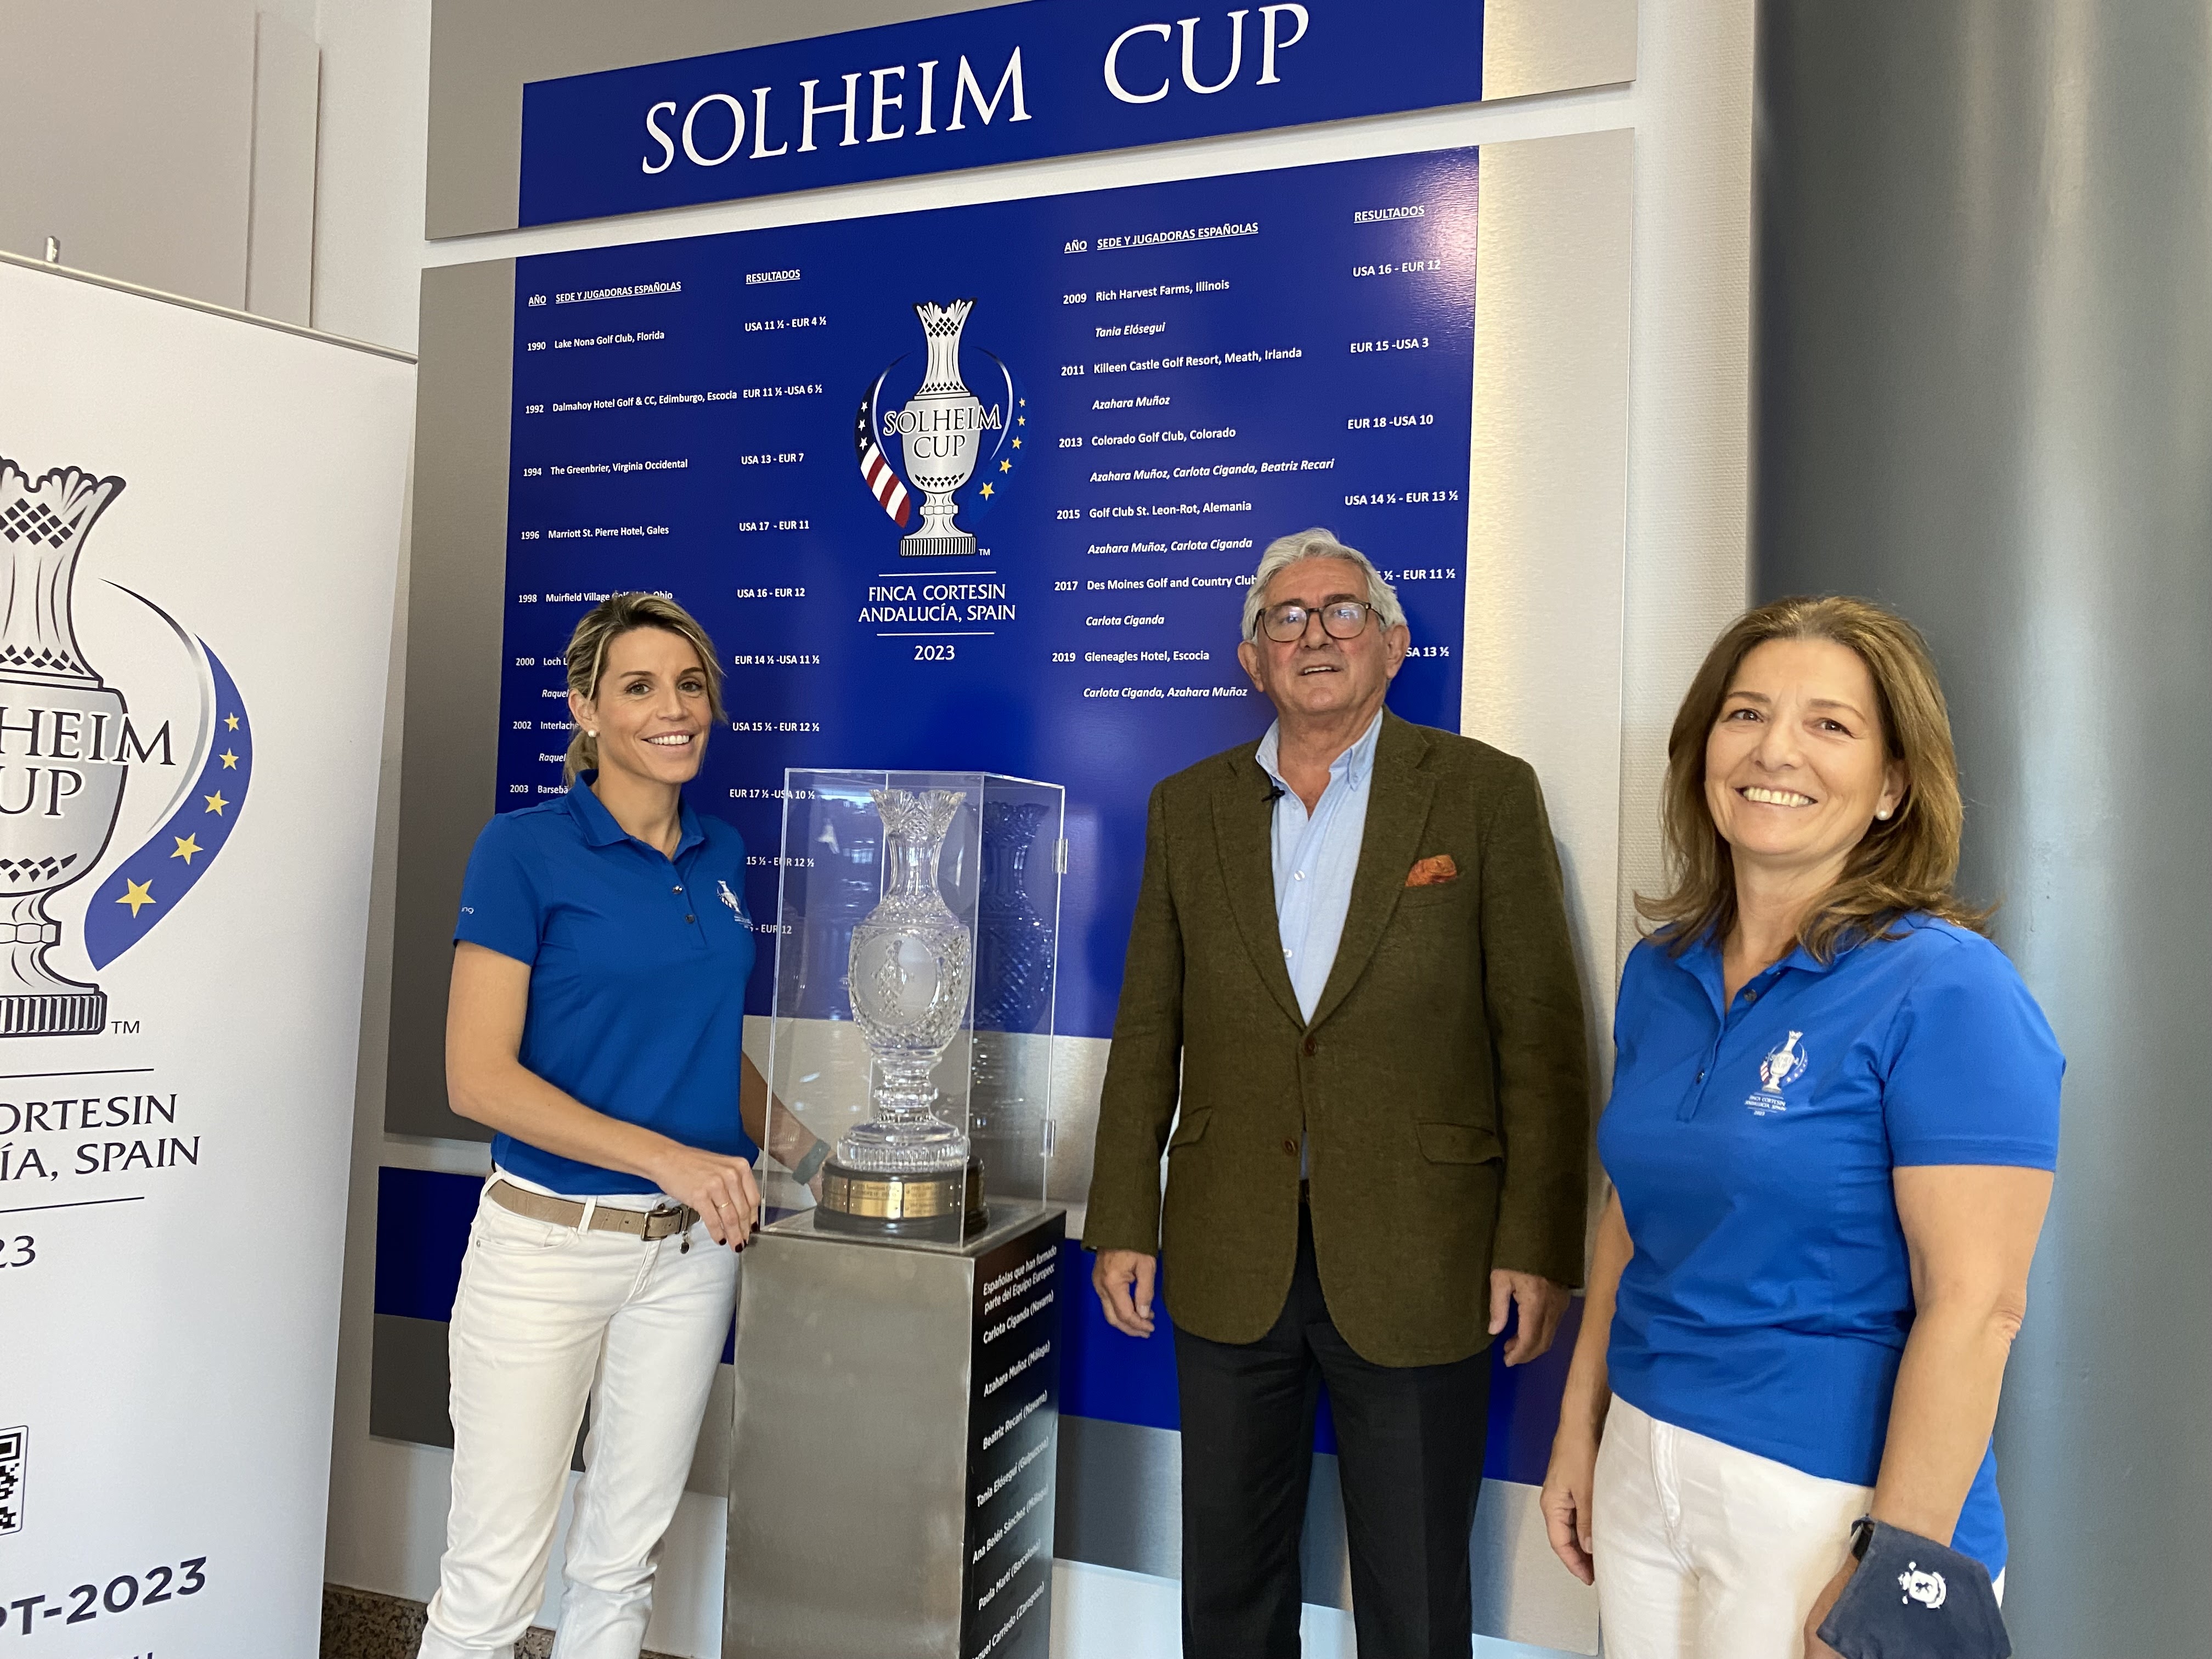 Primera etapa del trofeo de la Solheim Cup